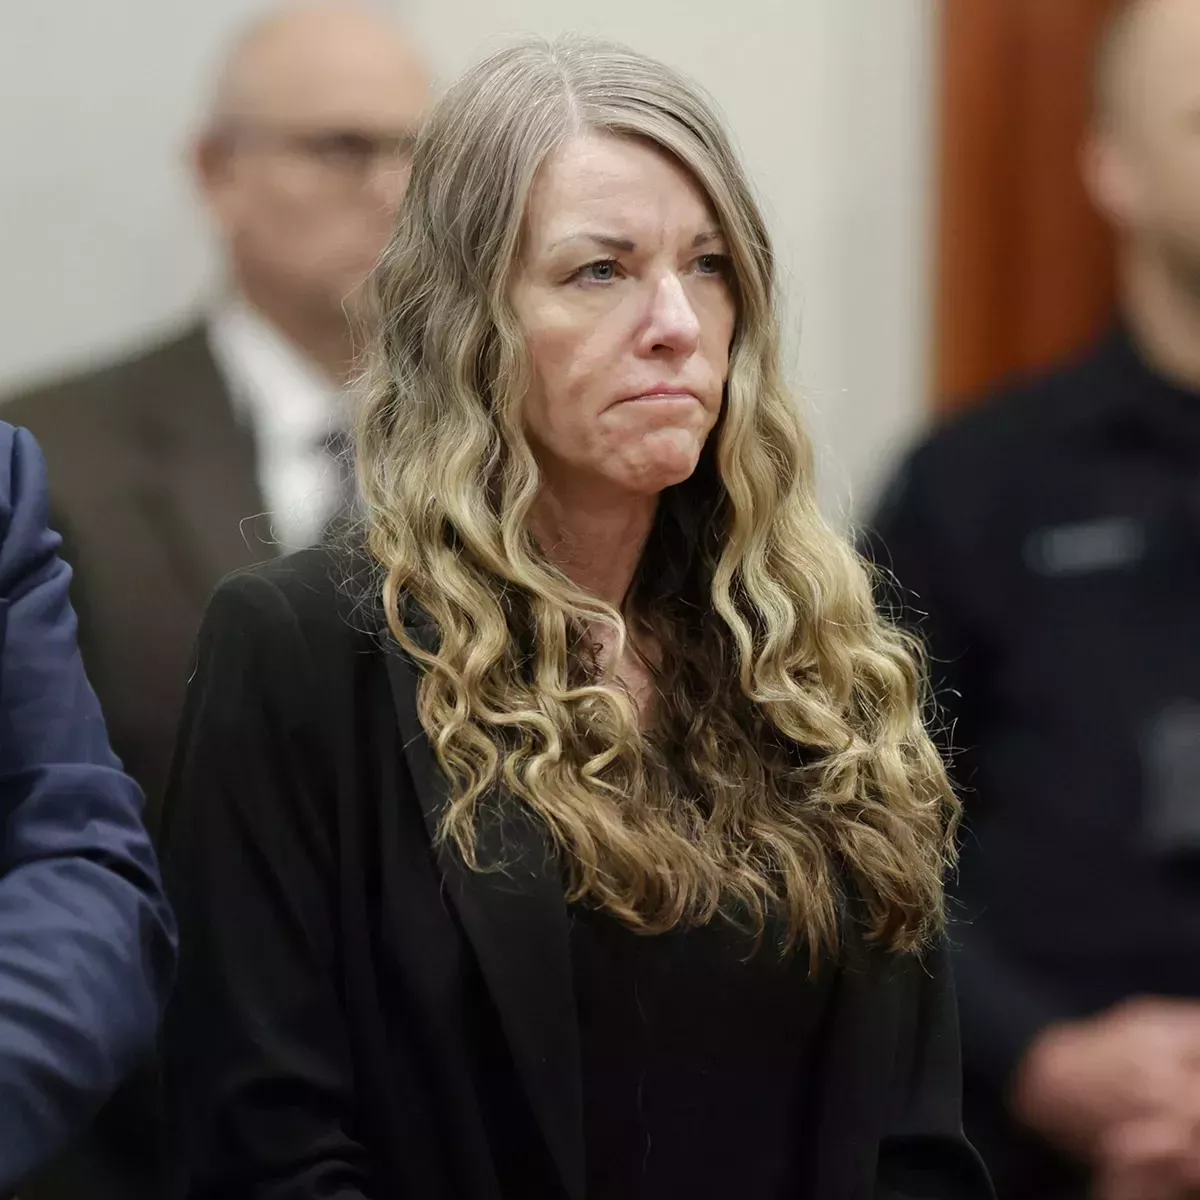 Caso Lori Vallow: Una madre de Idaho acusada de conspiración para cometer un nuevo asesinato